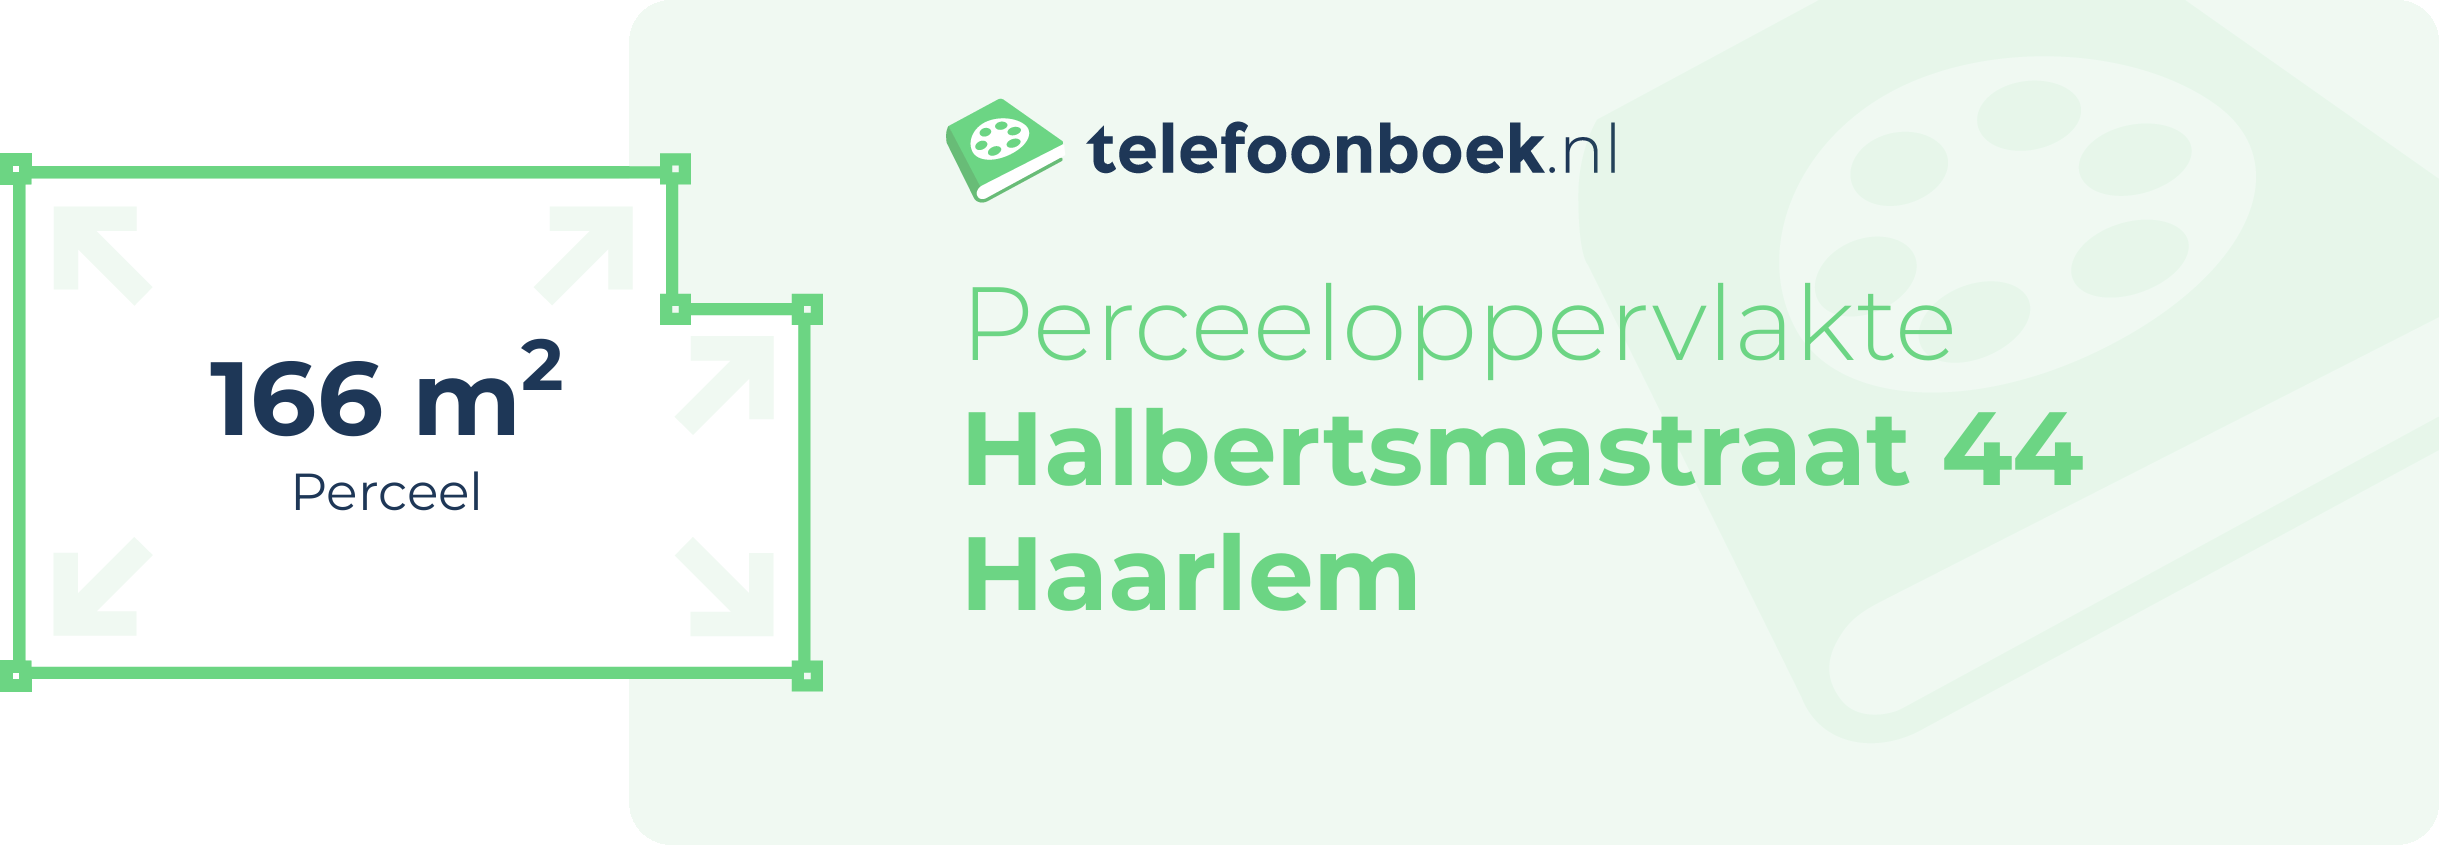 Perceeloppervlakte Halbertsmastraat 44 Haarlem